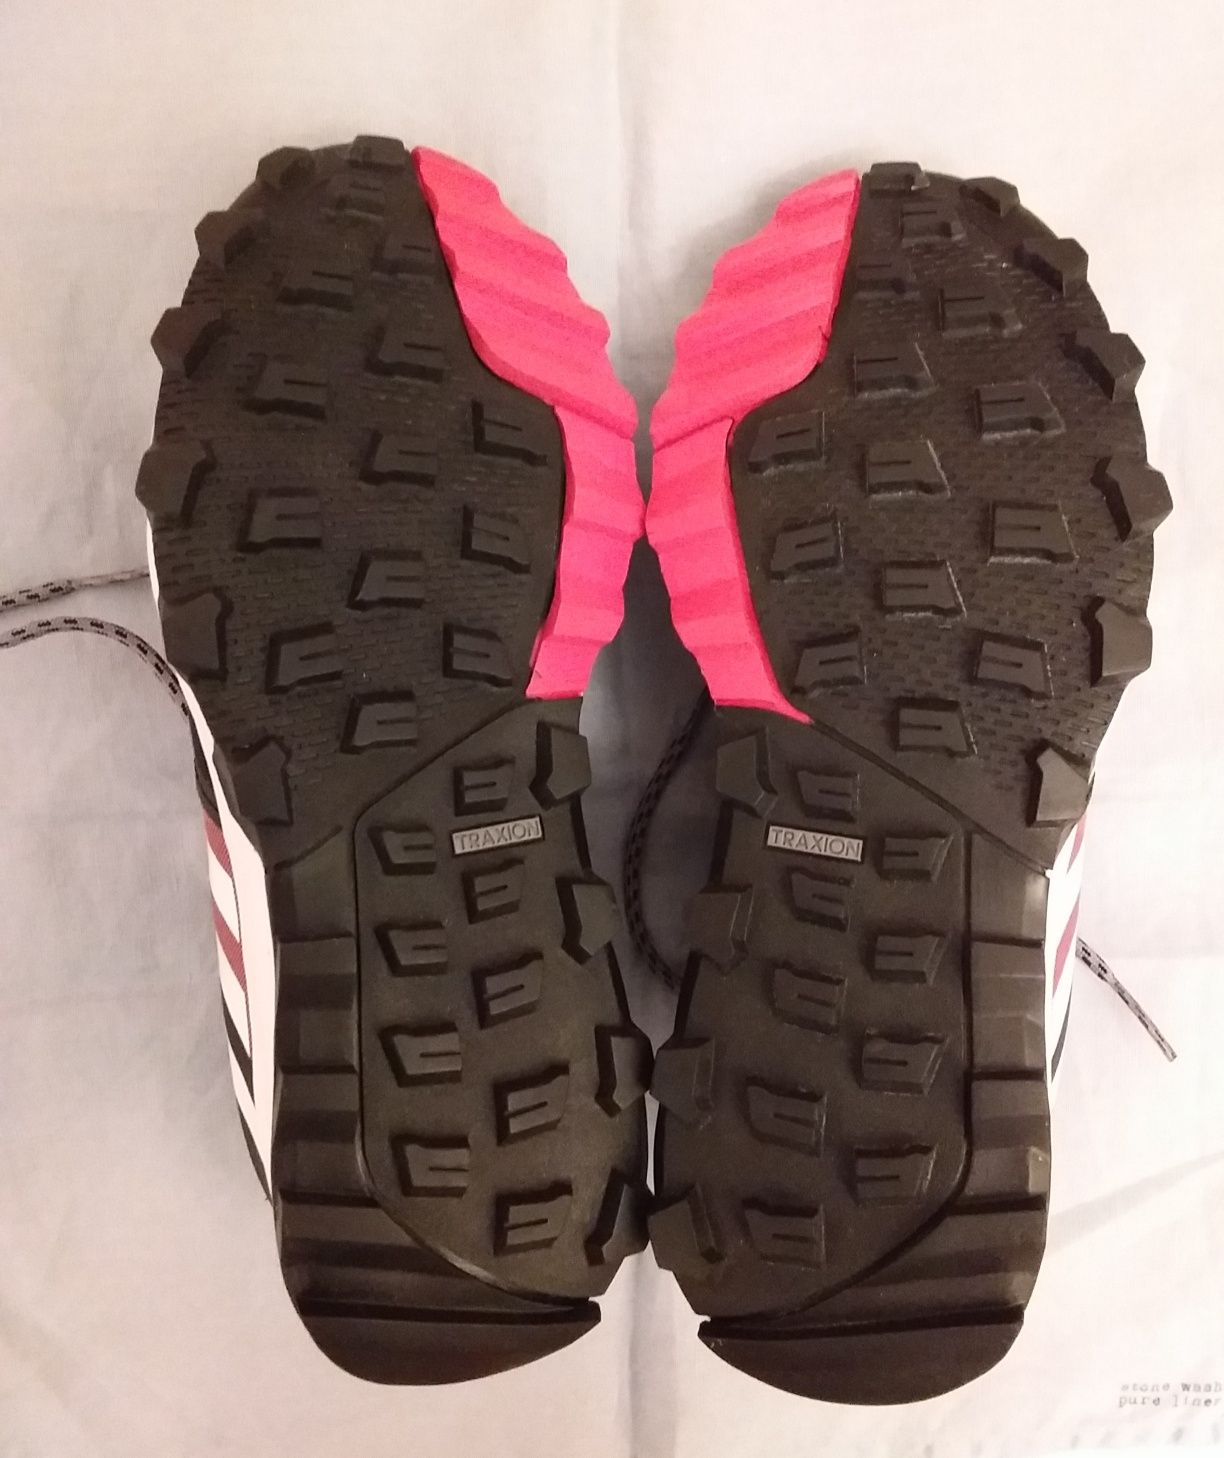 Nowe buty do biegania Adidas KANADIA 8 Tr W, damskie, rozm 40